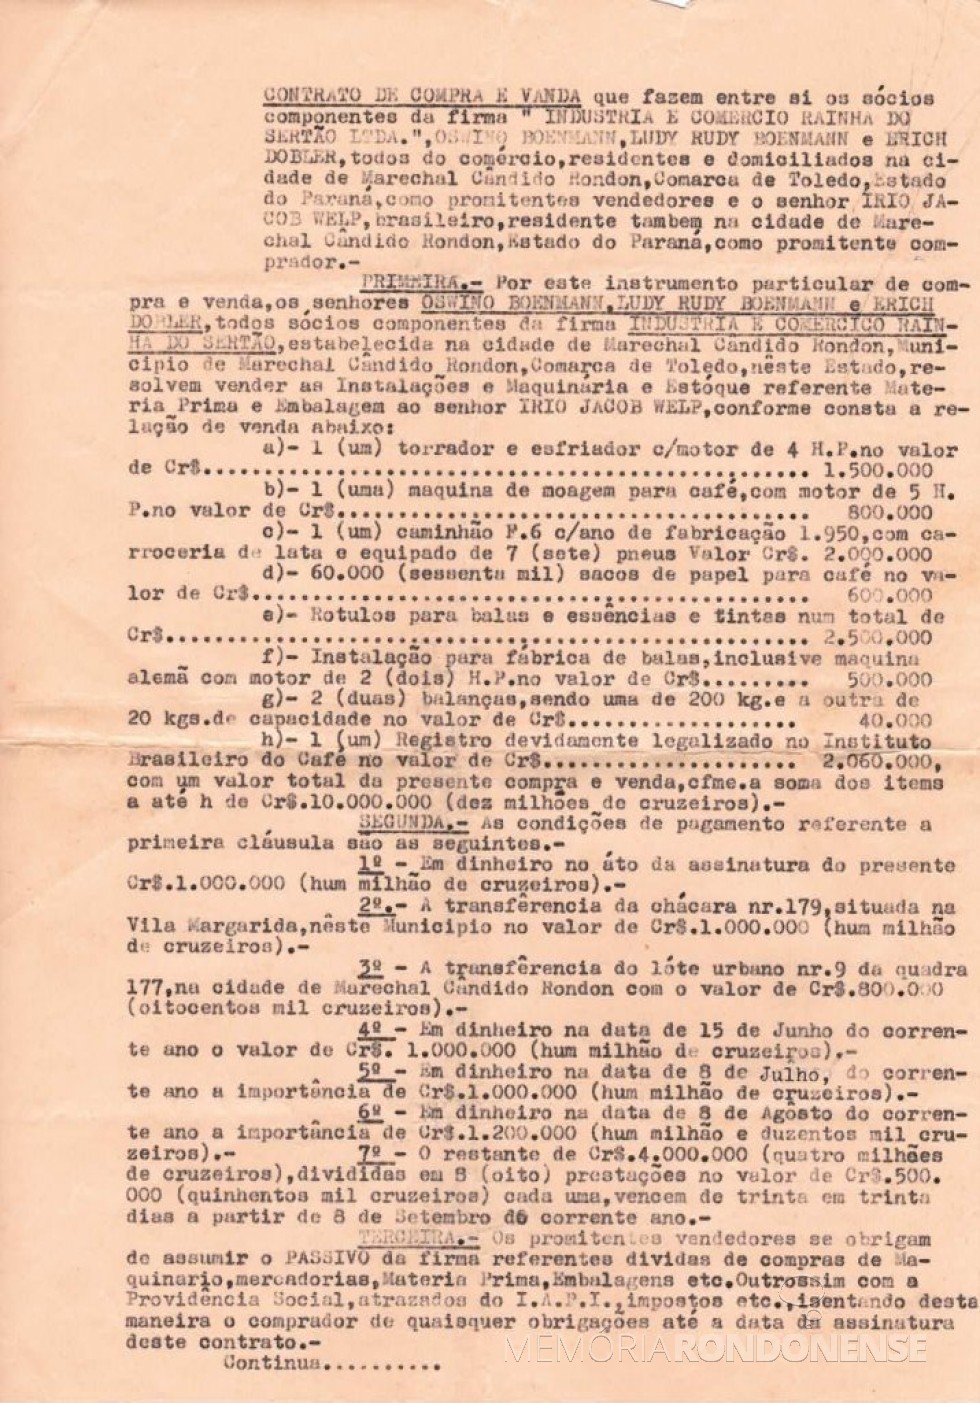 Contrato (1ª parte)  da venda e compra da Industria e Comércio Rainha do Sertão Ltda., em junho de 1965.
Imagem: Acervo Alípio Dobler - FOTO 3 - 